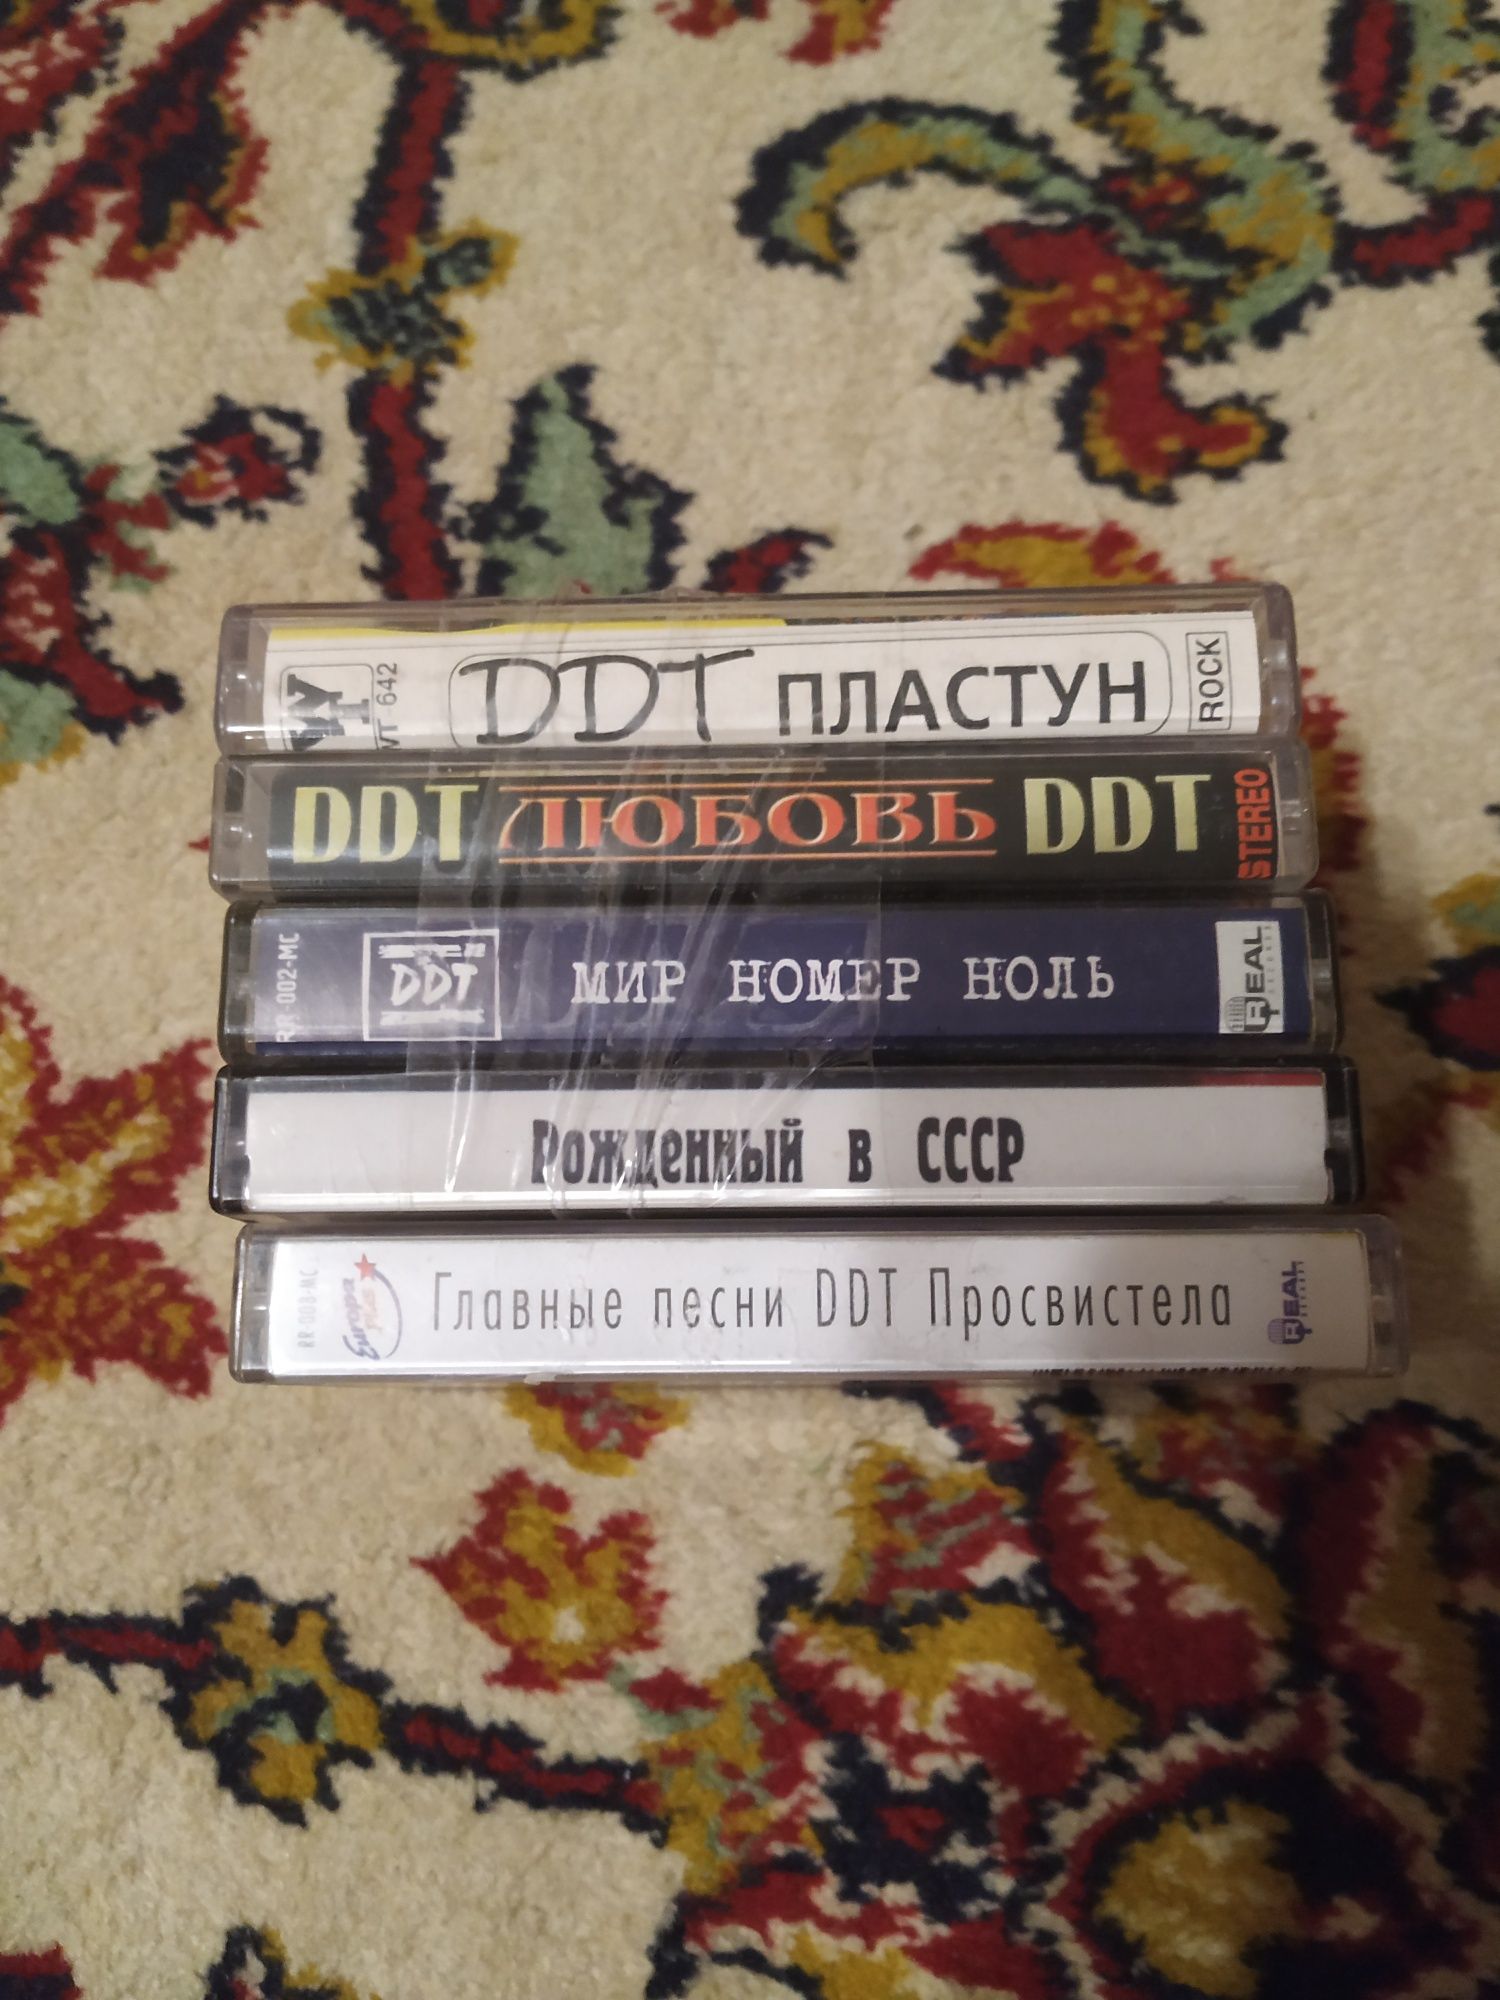 Аудио кассеты группы ДДТ